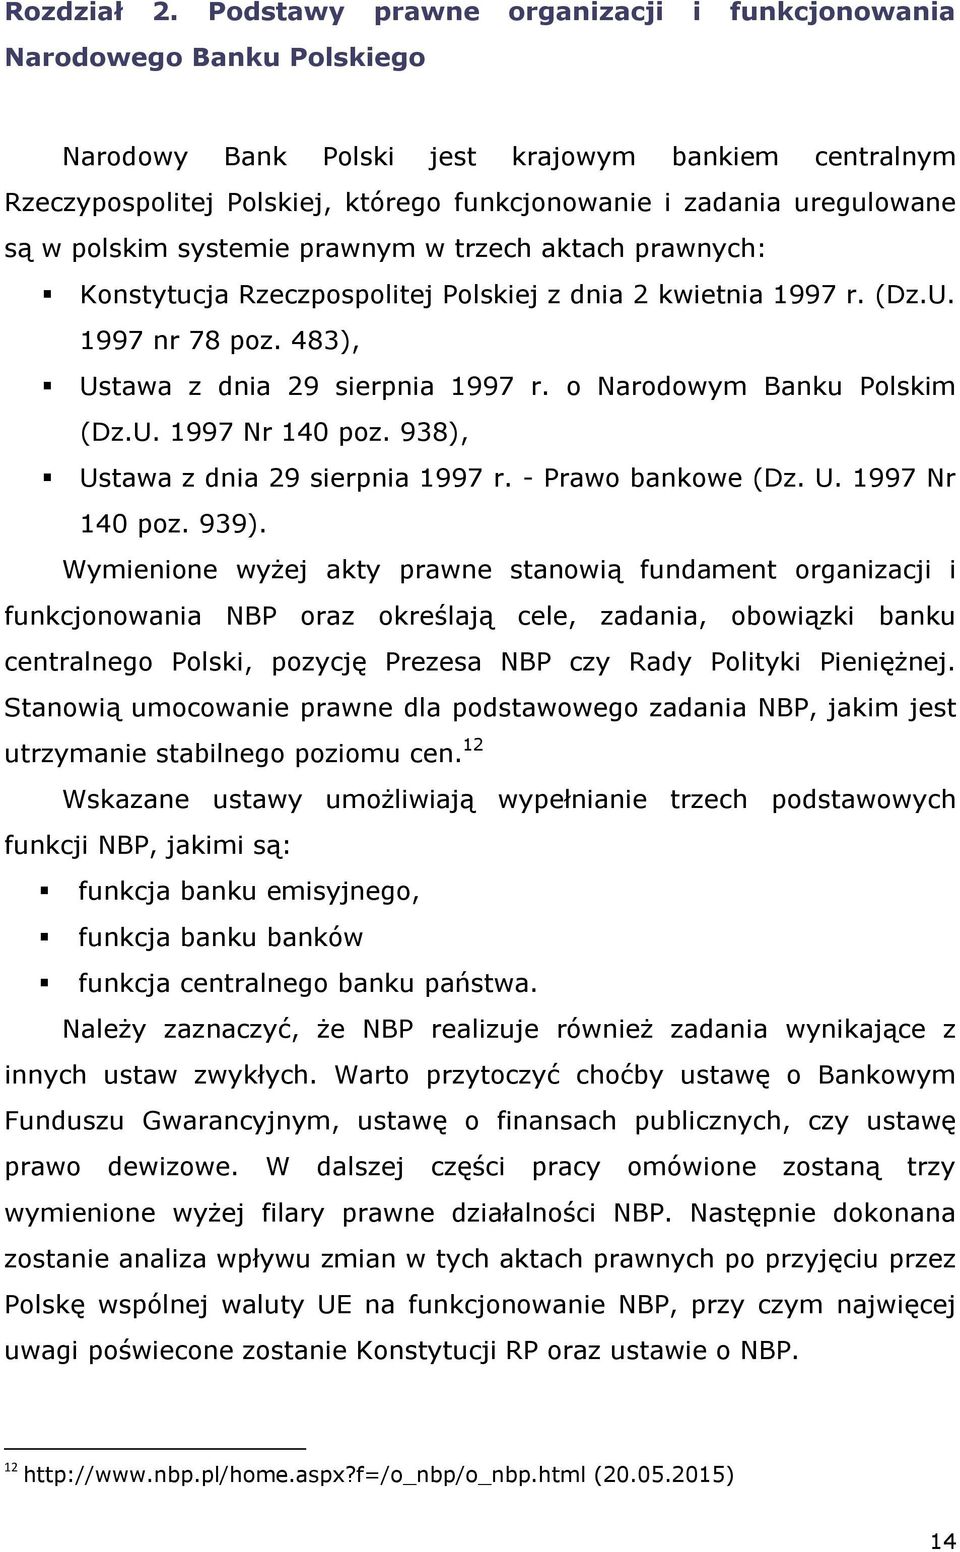 są w polskim systemie prawnym w trzech aktach prawnych: Konstytucja Rzeczpospolitej Polskiej z dnia 2 kwietnia 1997 r. (Dz.U. 1997 nr 78 poz. 483), Ustawa z dnia 29 sierpnia 1997 r.